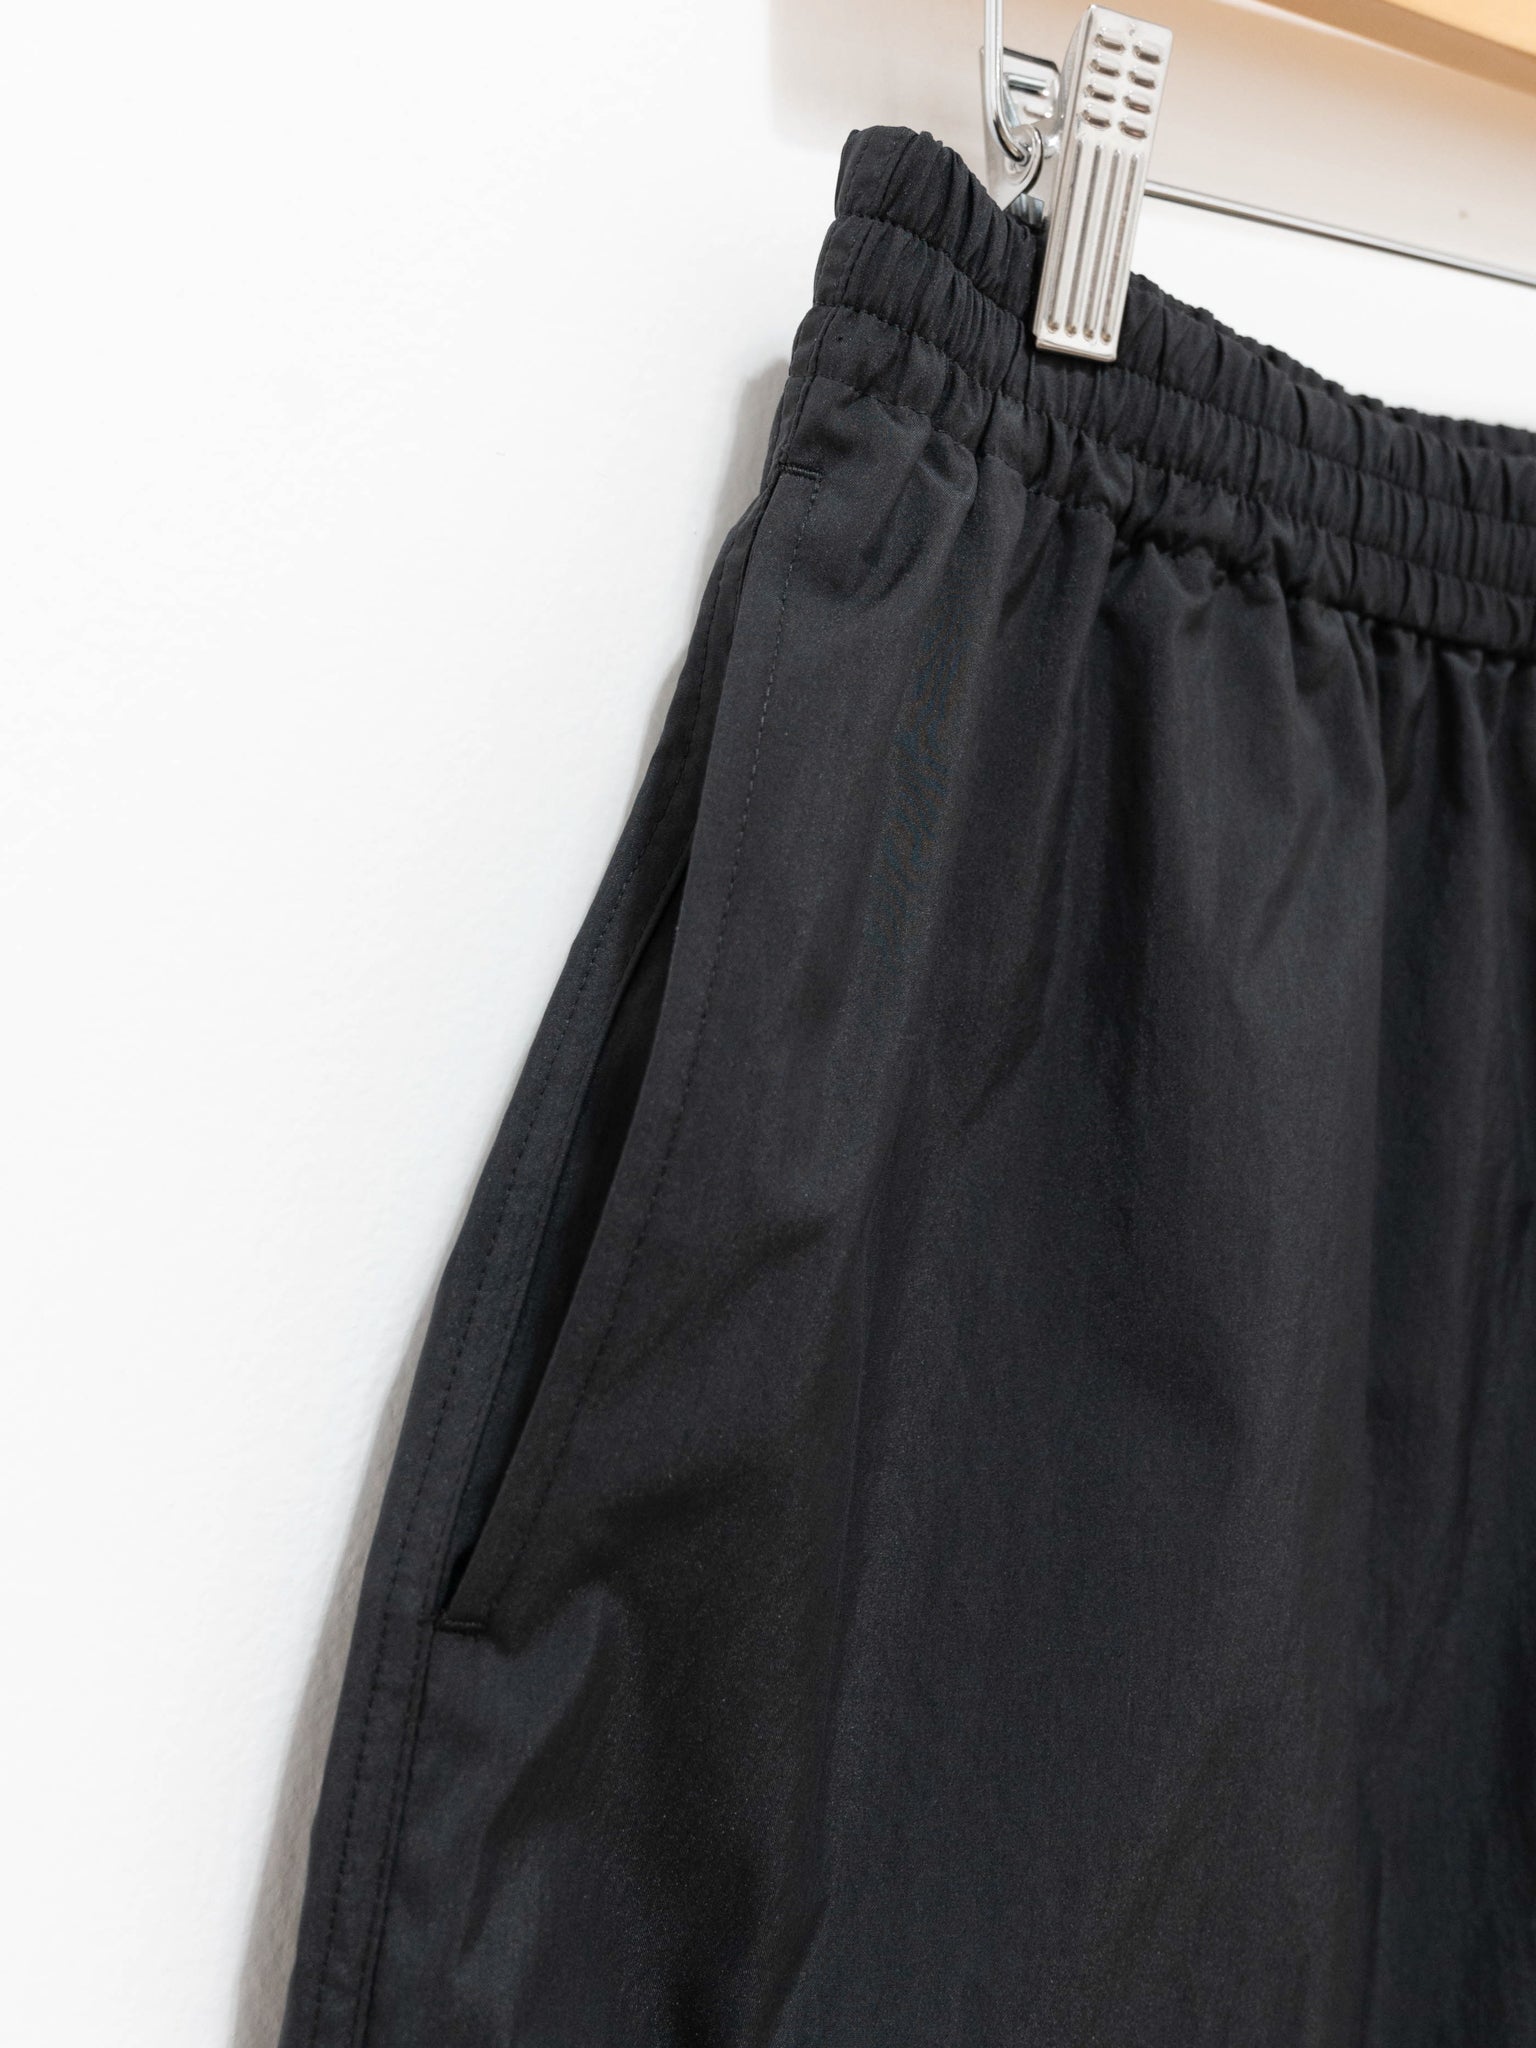 Namu Shop - Auralee Washed Cotton Nylon Weather Easy Shorts - Black